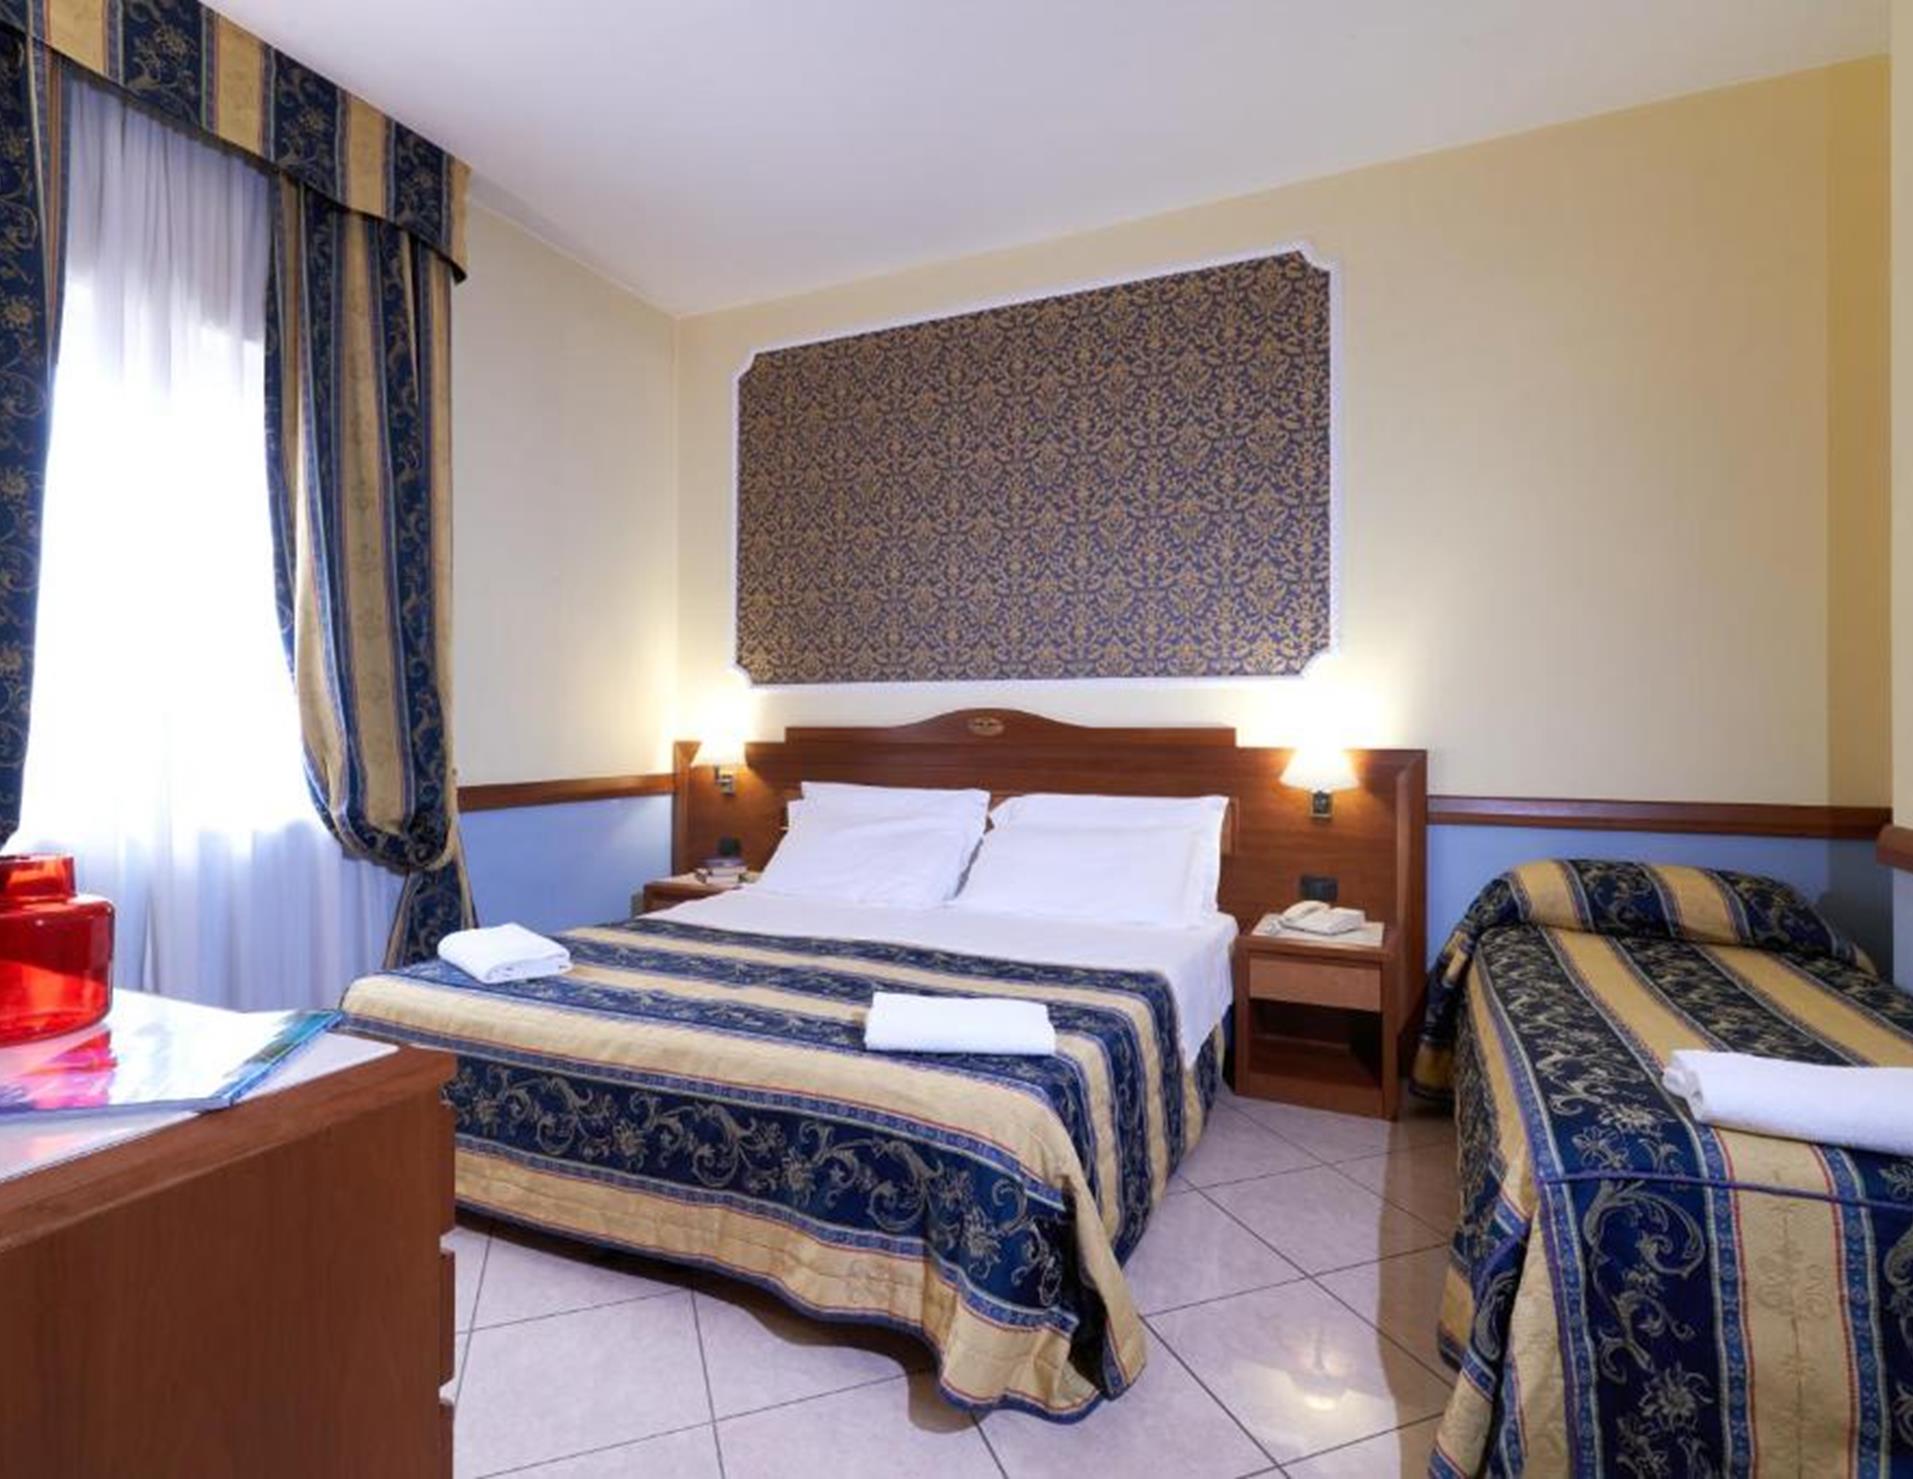 Hotel Ristorante La Piana - Room 2